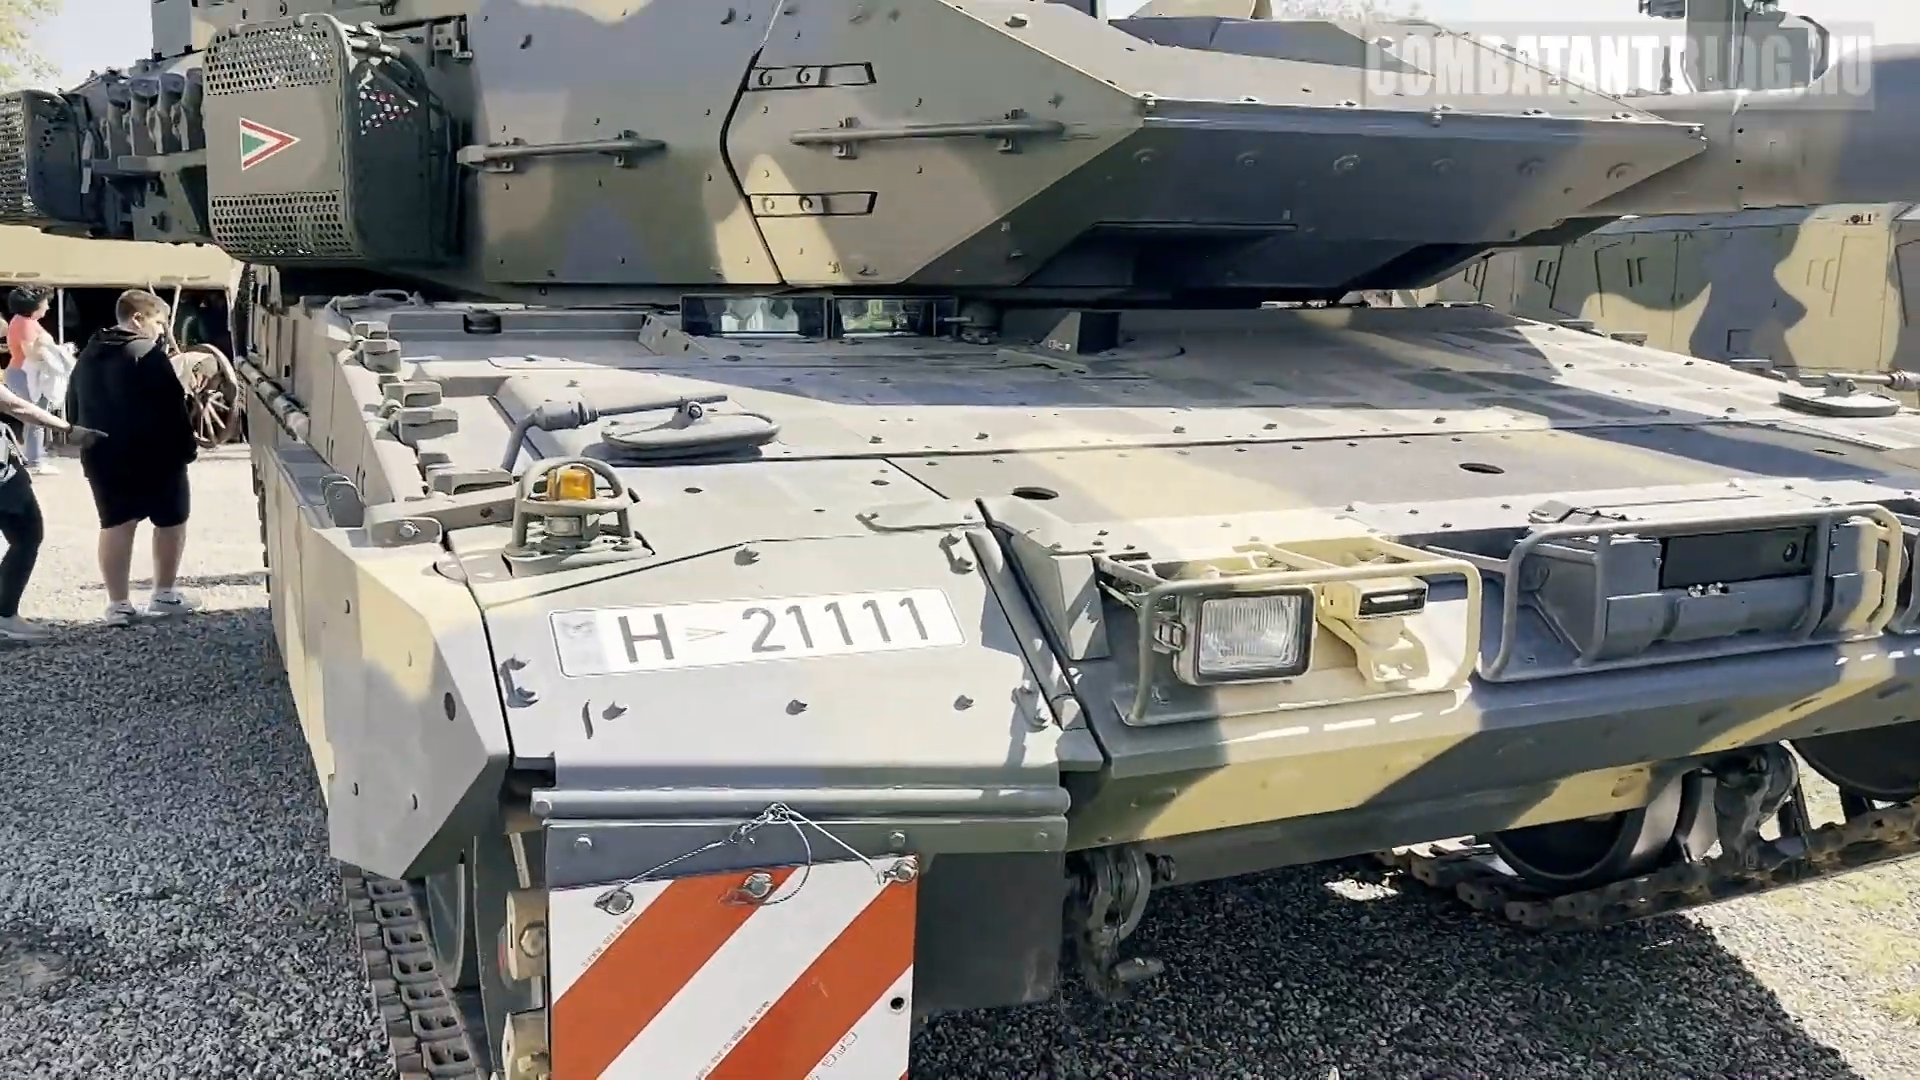 هنغاريا تطلب شراء دبابات +Leopard 2 A7 ومدفعيه PzH 2000 الذاتيه الحركه  GLsA_CXboAE2vFk?format=jpg&name=large